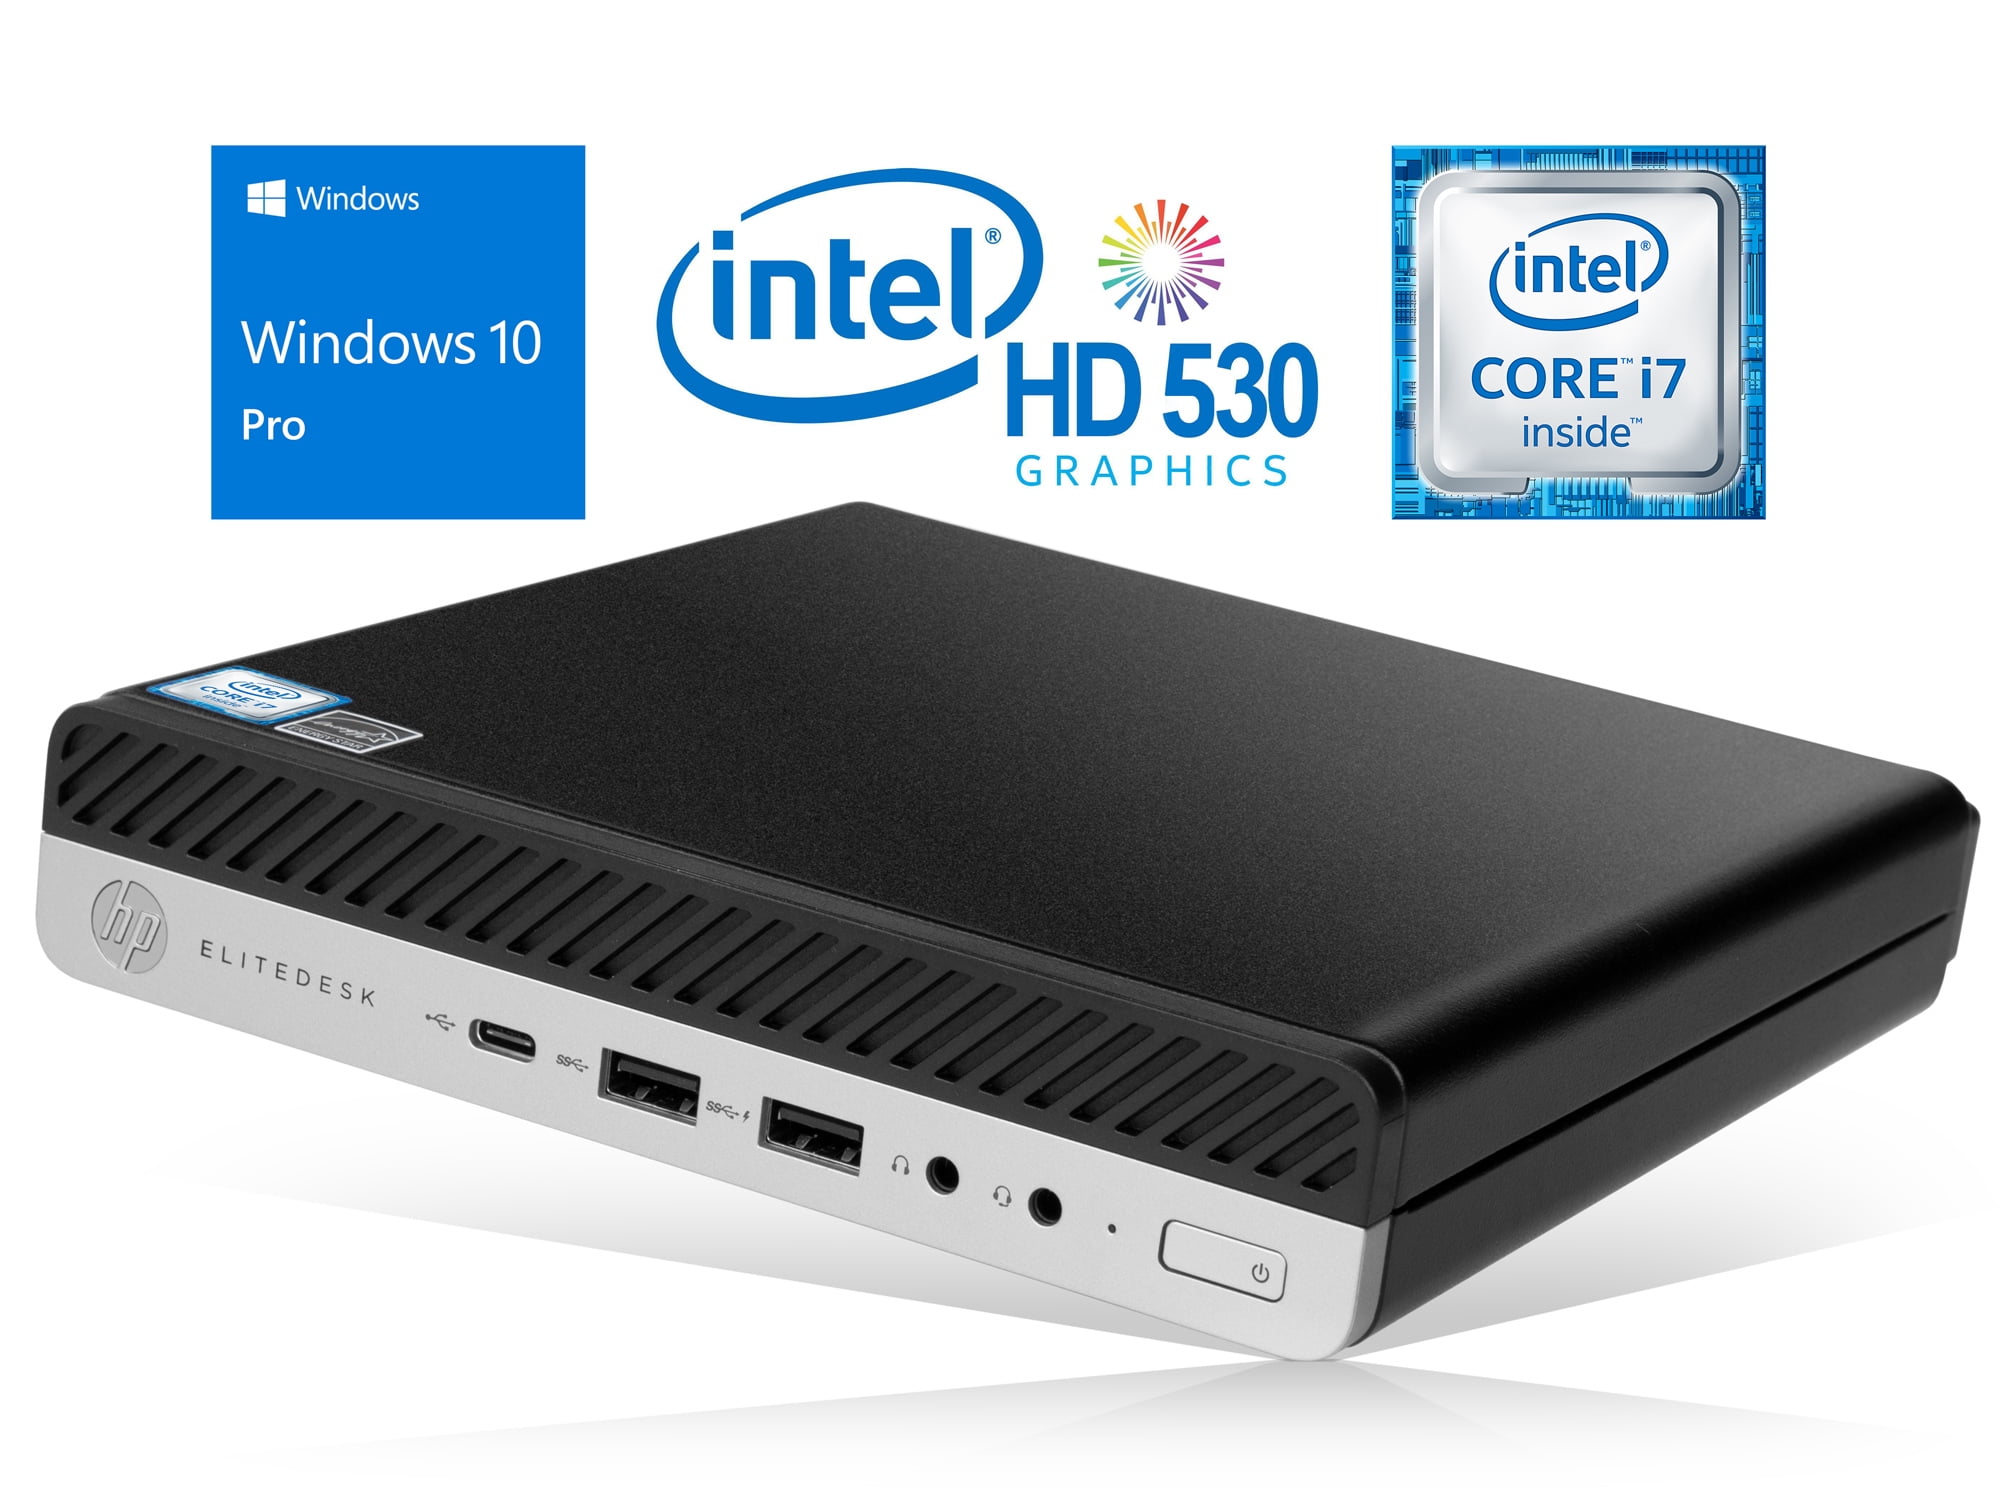 Økologi besøgende Forstad HP EliteDesk 800 G3 Mini PC, Intel Core i7-6700 Upto 4.0GHz, 8GB RAM, 128GB  SSD, DisplayPort, Wi-Fi, Bluetooth, Windows 10 Pro - Walmart.com